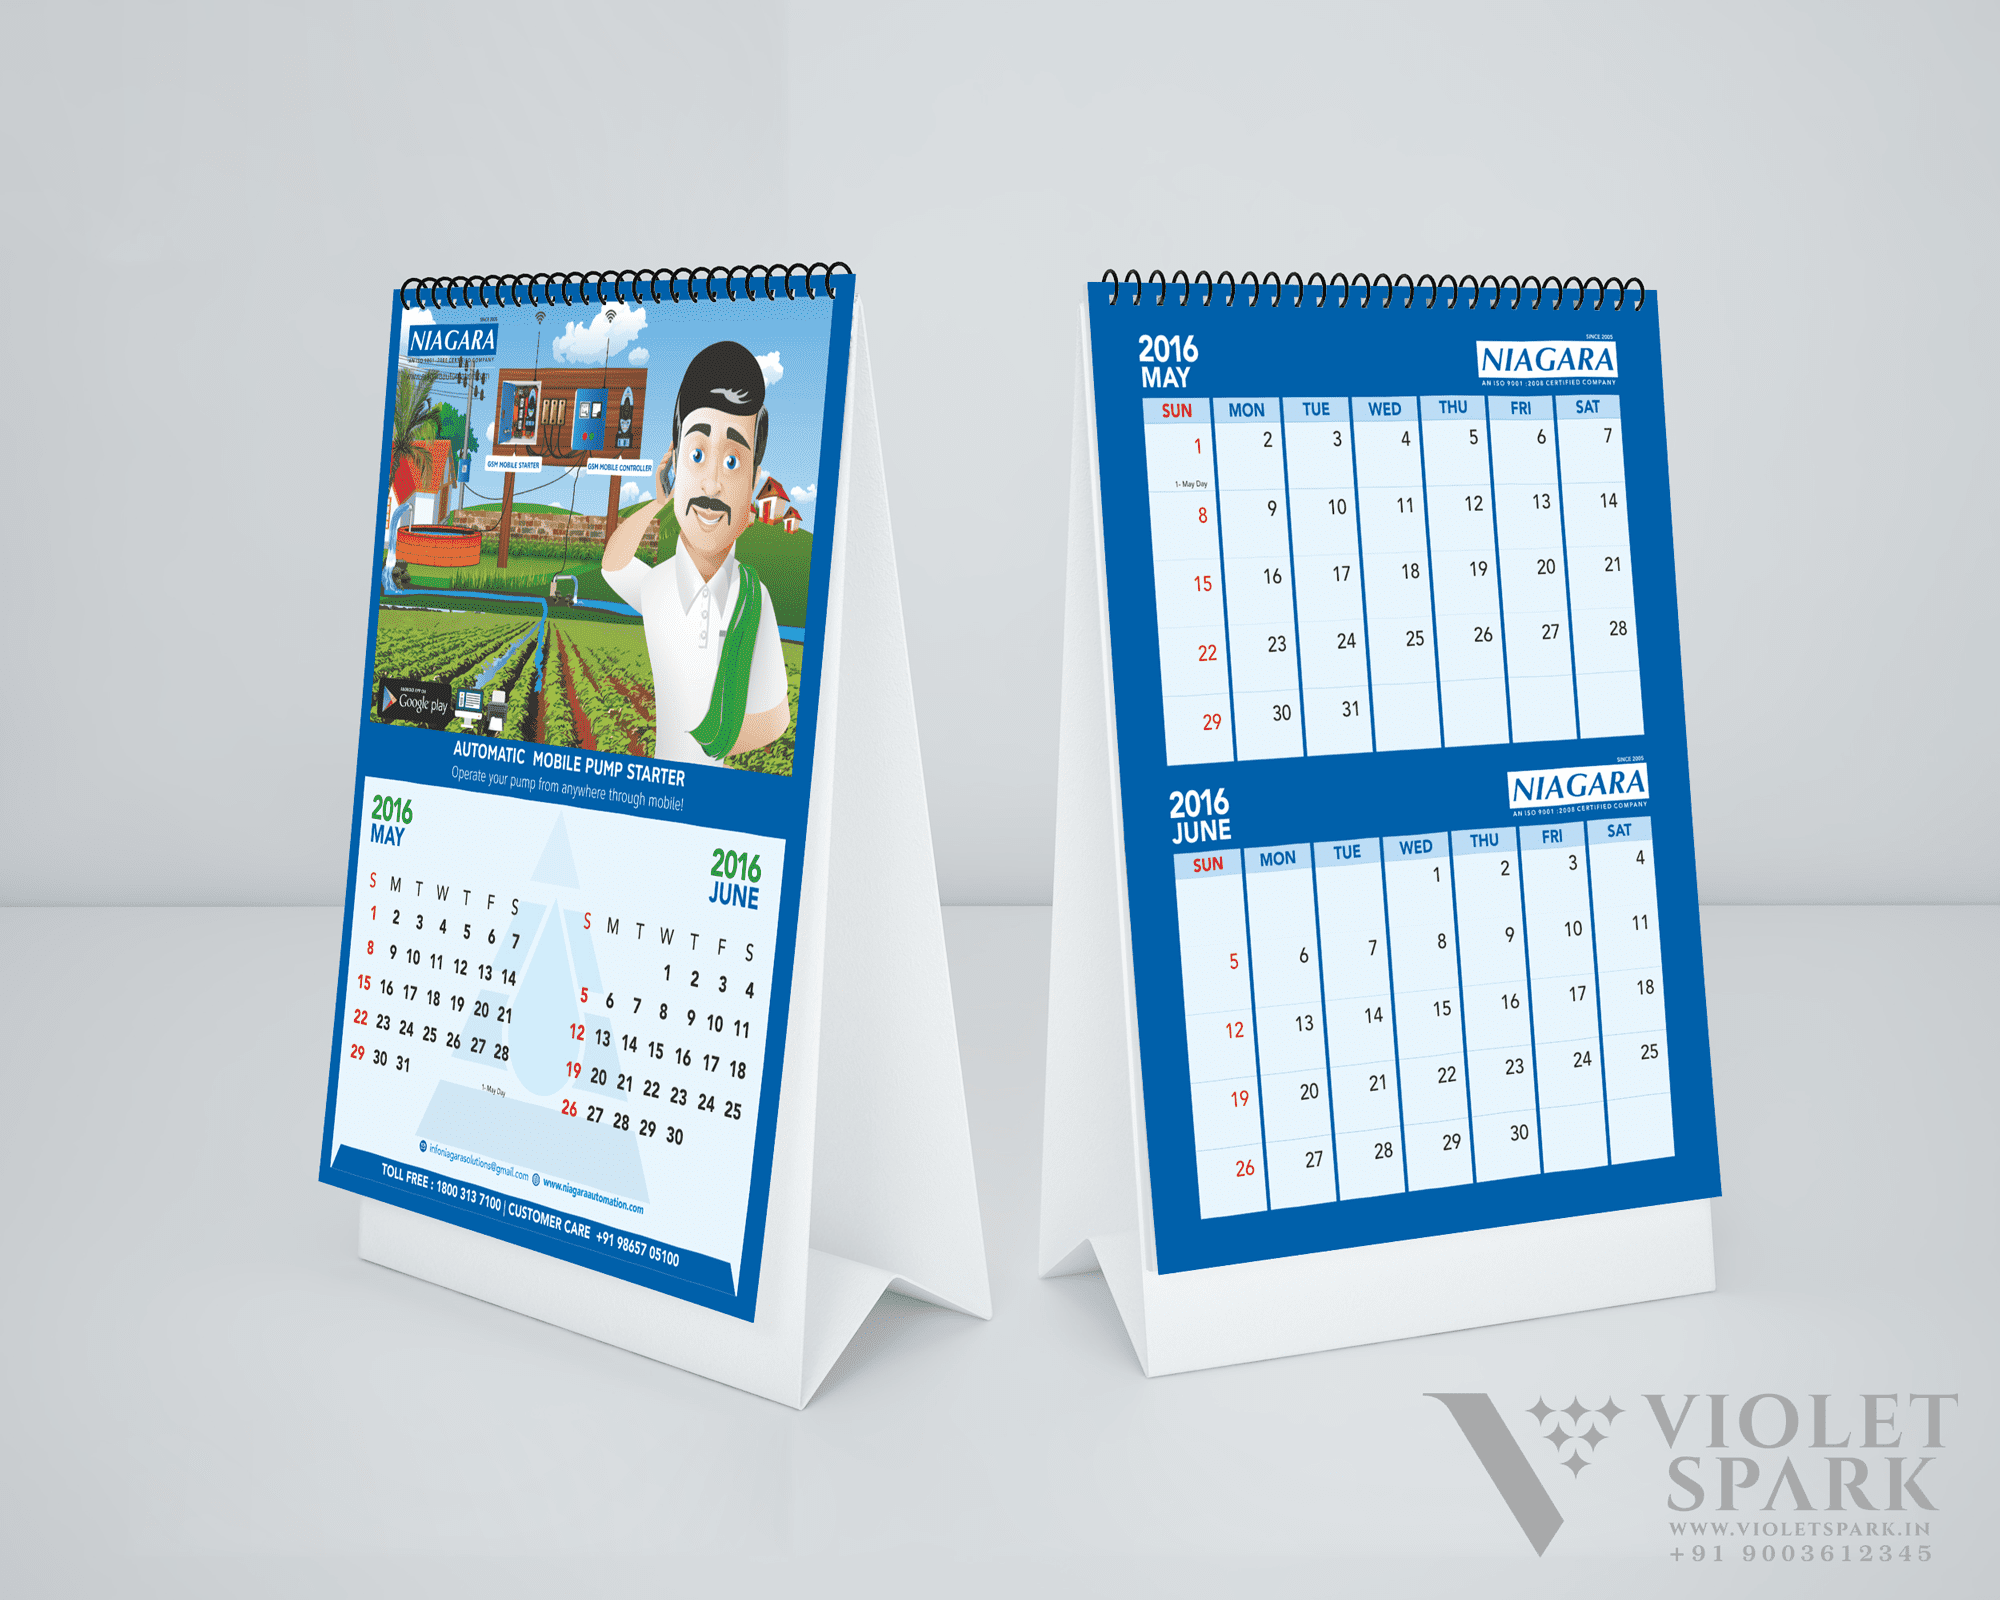 Niagara Solutions Calendar Branding Design Digital Marketing in Srilanka by Violet Spark